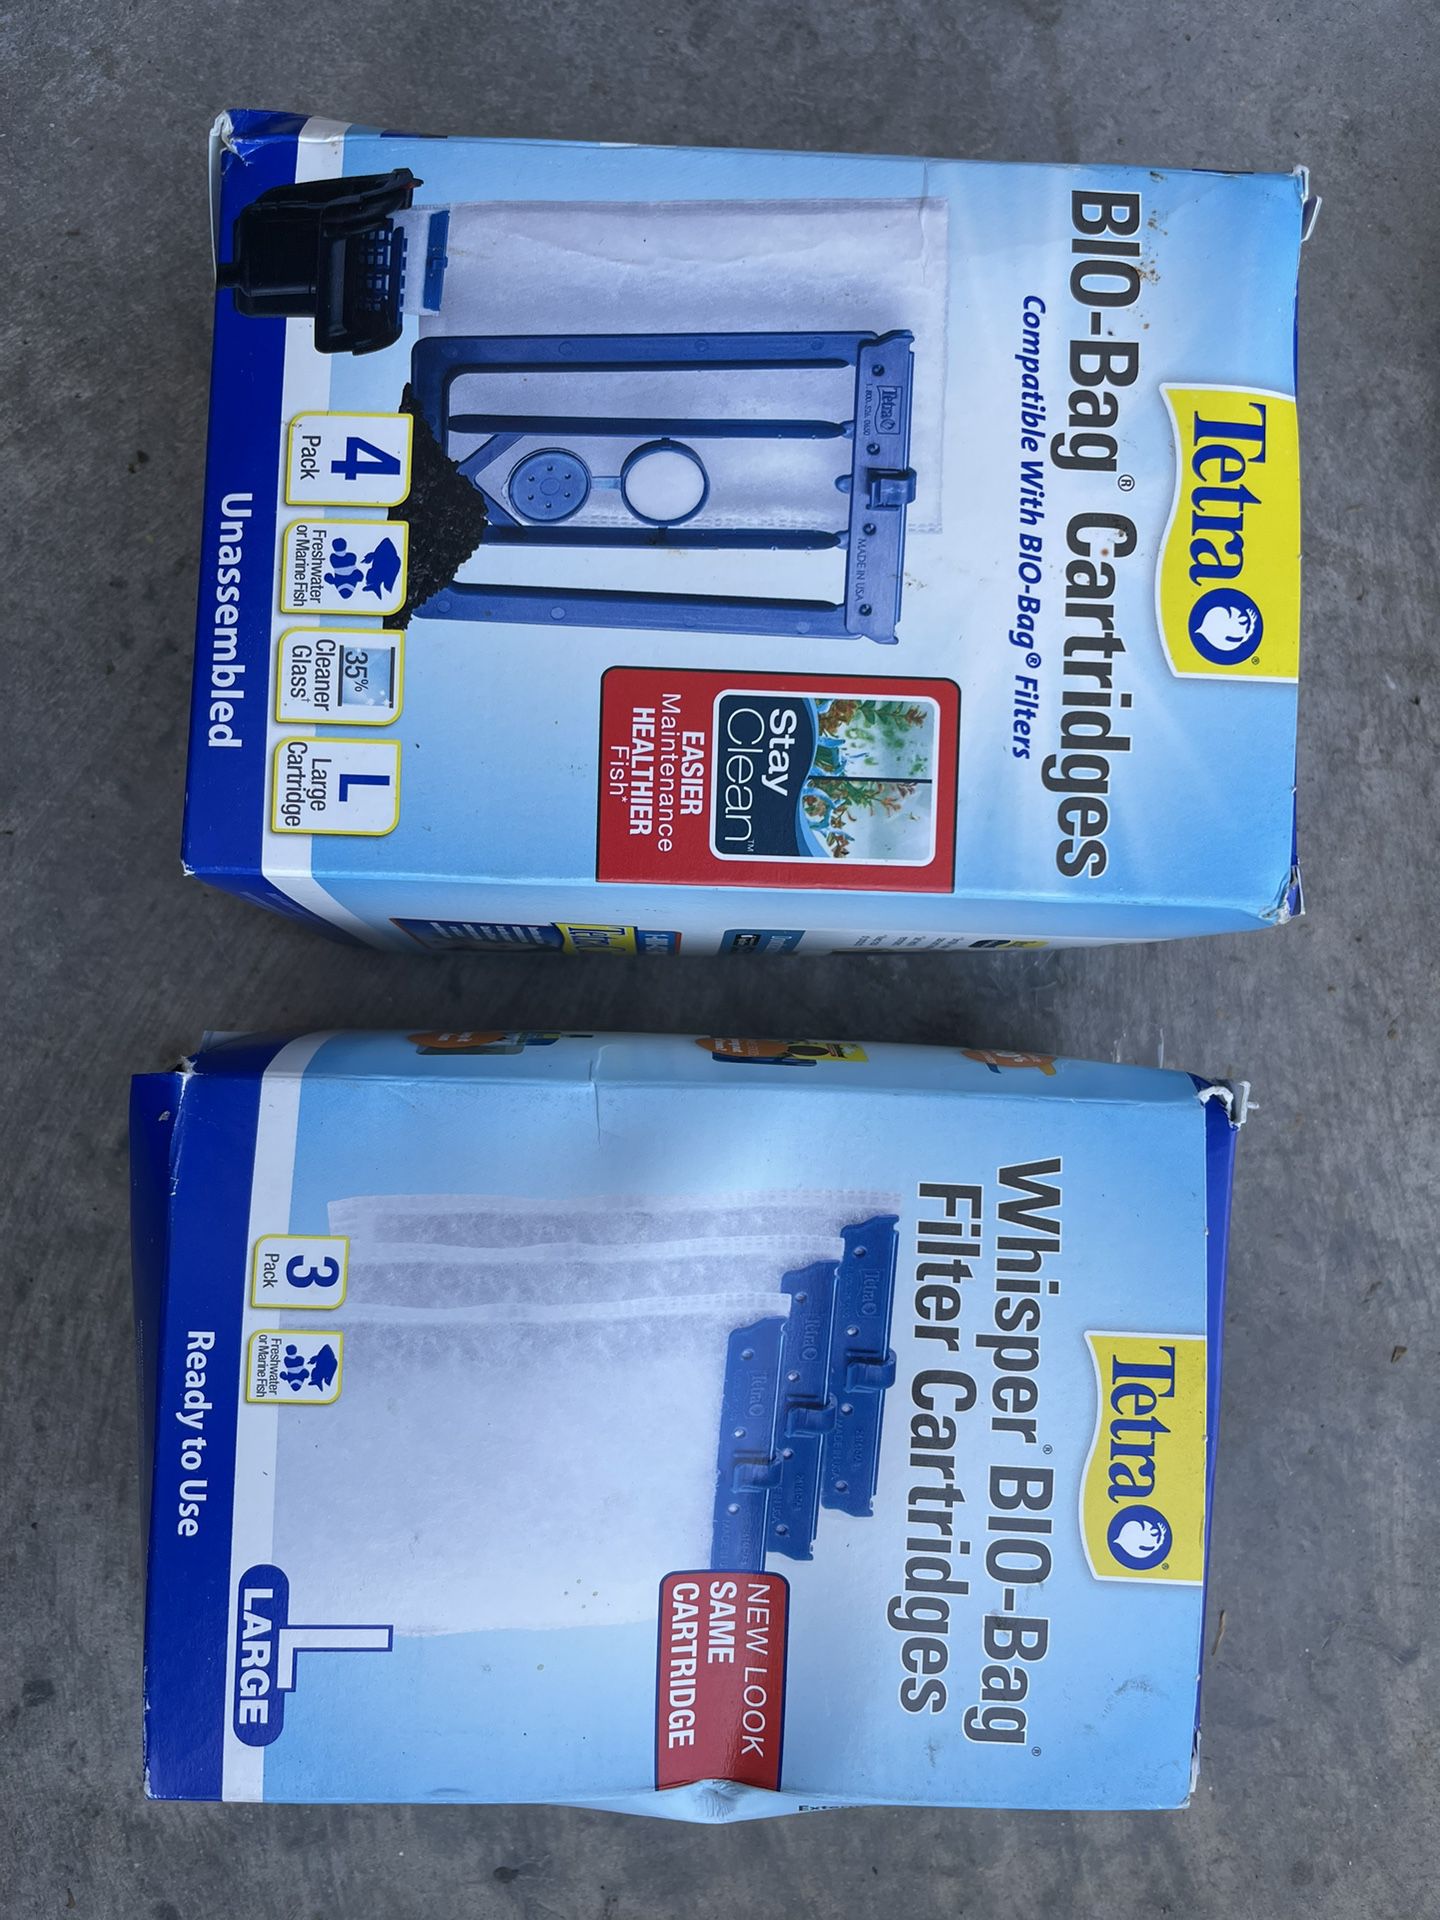 Tetra Bio Bag Cartridges 4 Pack And Tetra Whisper Bio-bag Filter Cartridges 3 Pack. New In Box. 